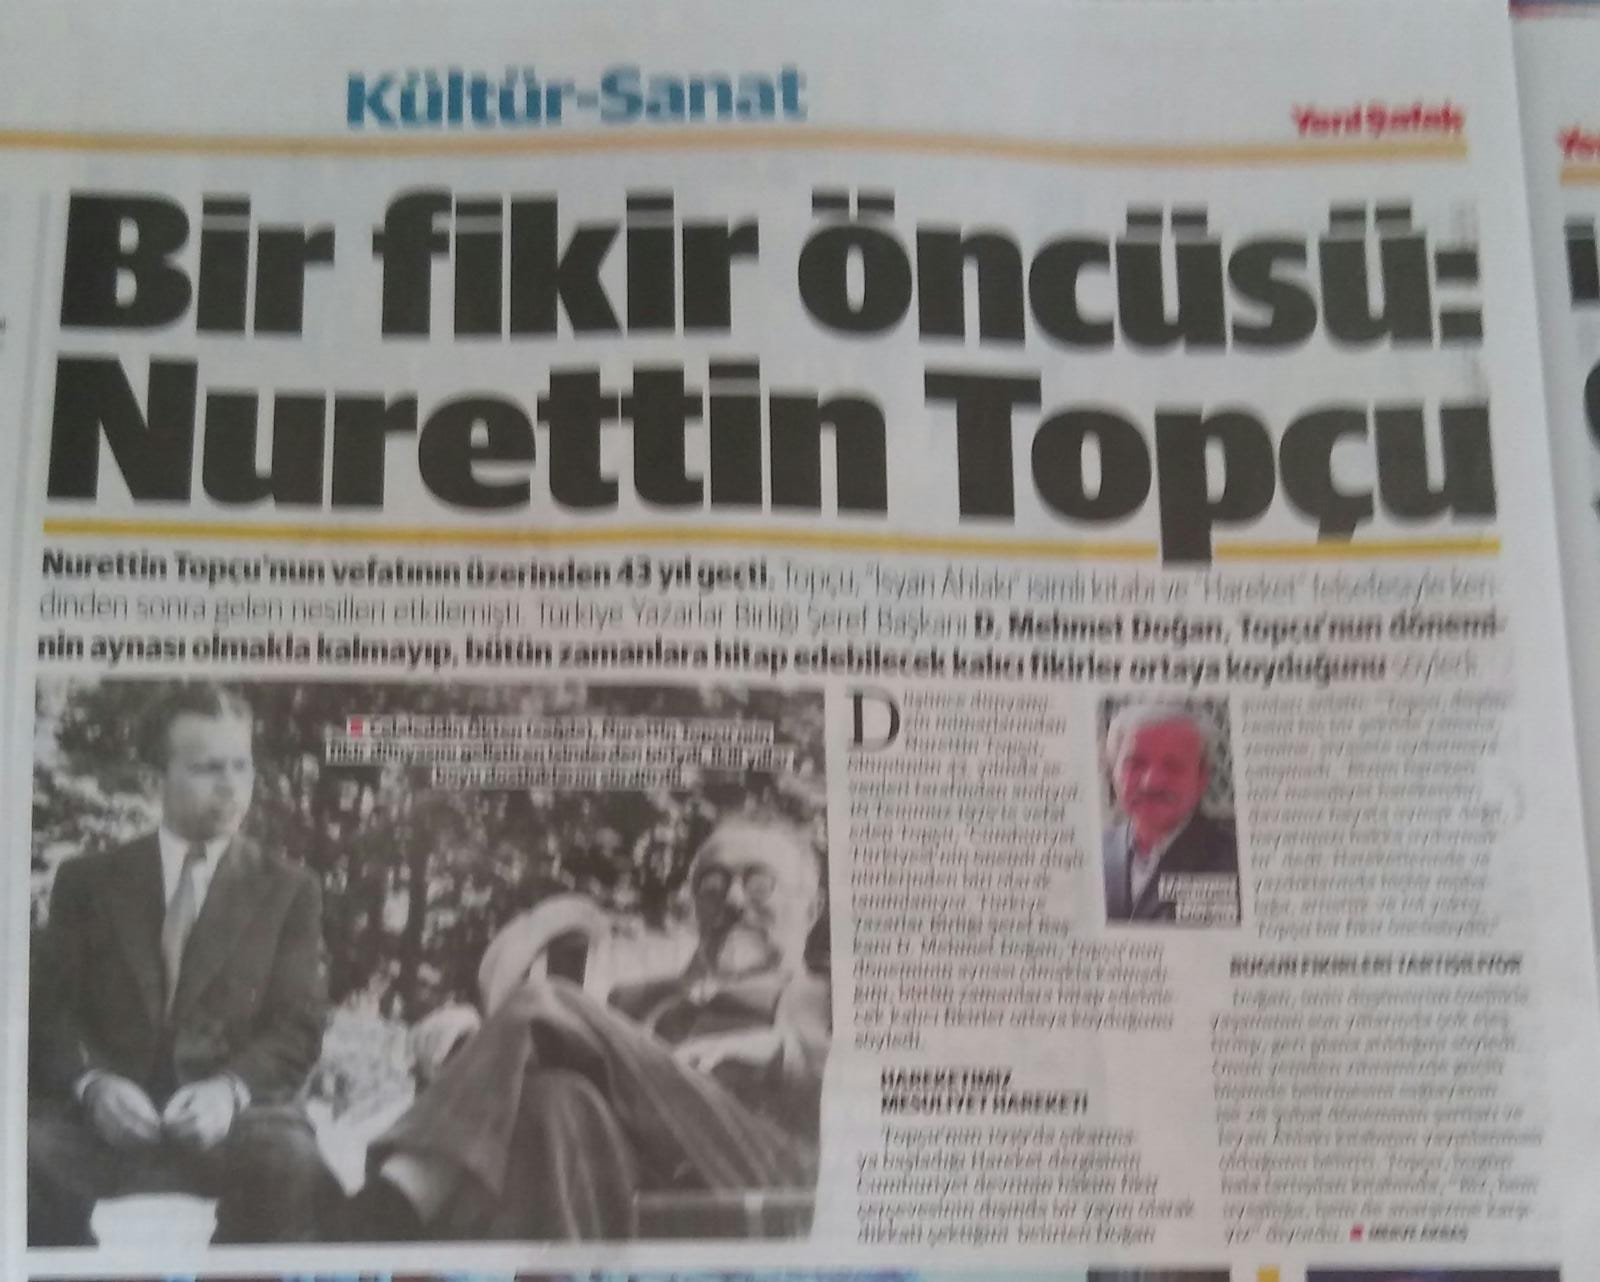 D. Mehmet Doğan: Bir fikir öncüsü: Nureddin Topçu